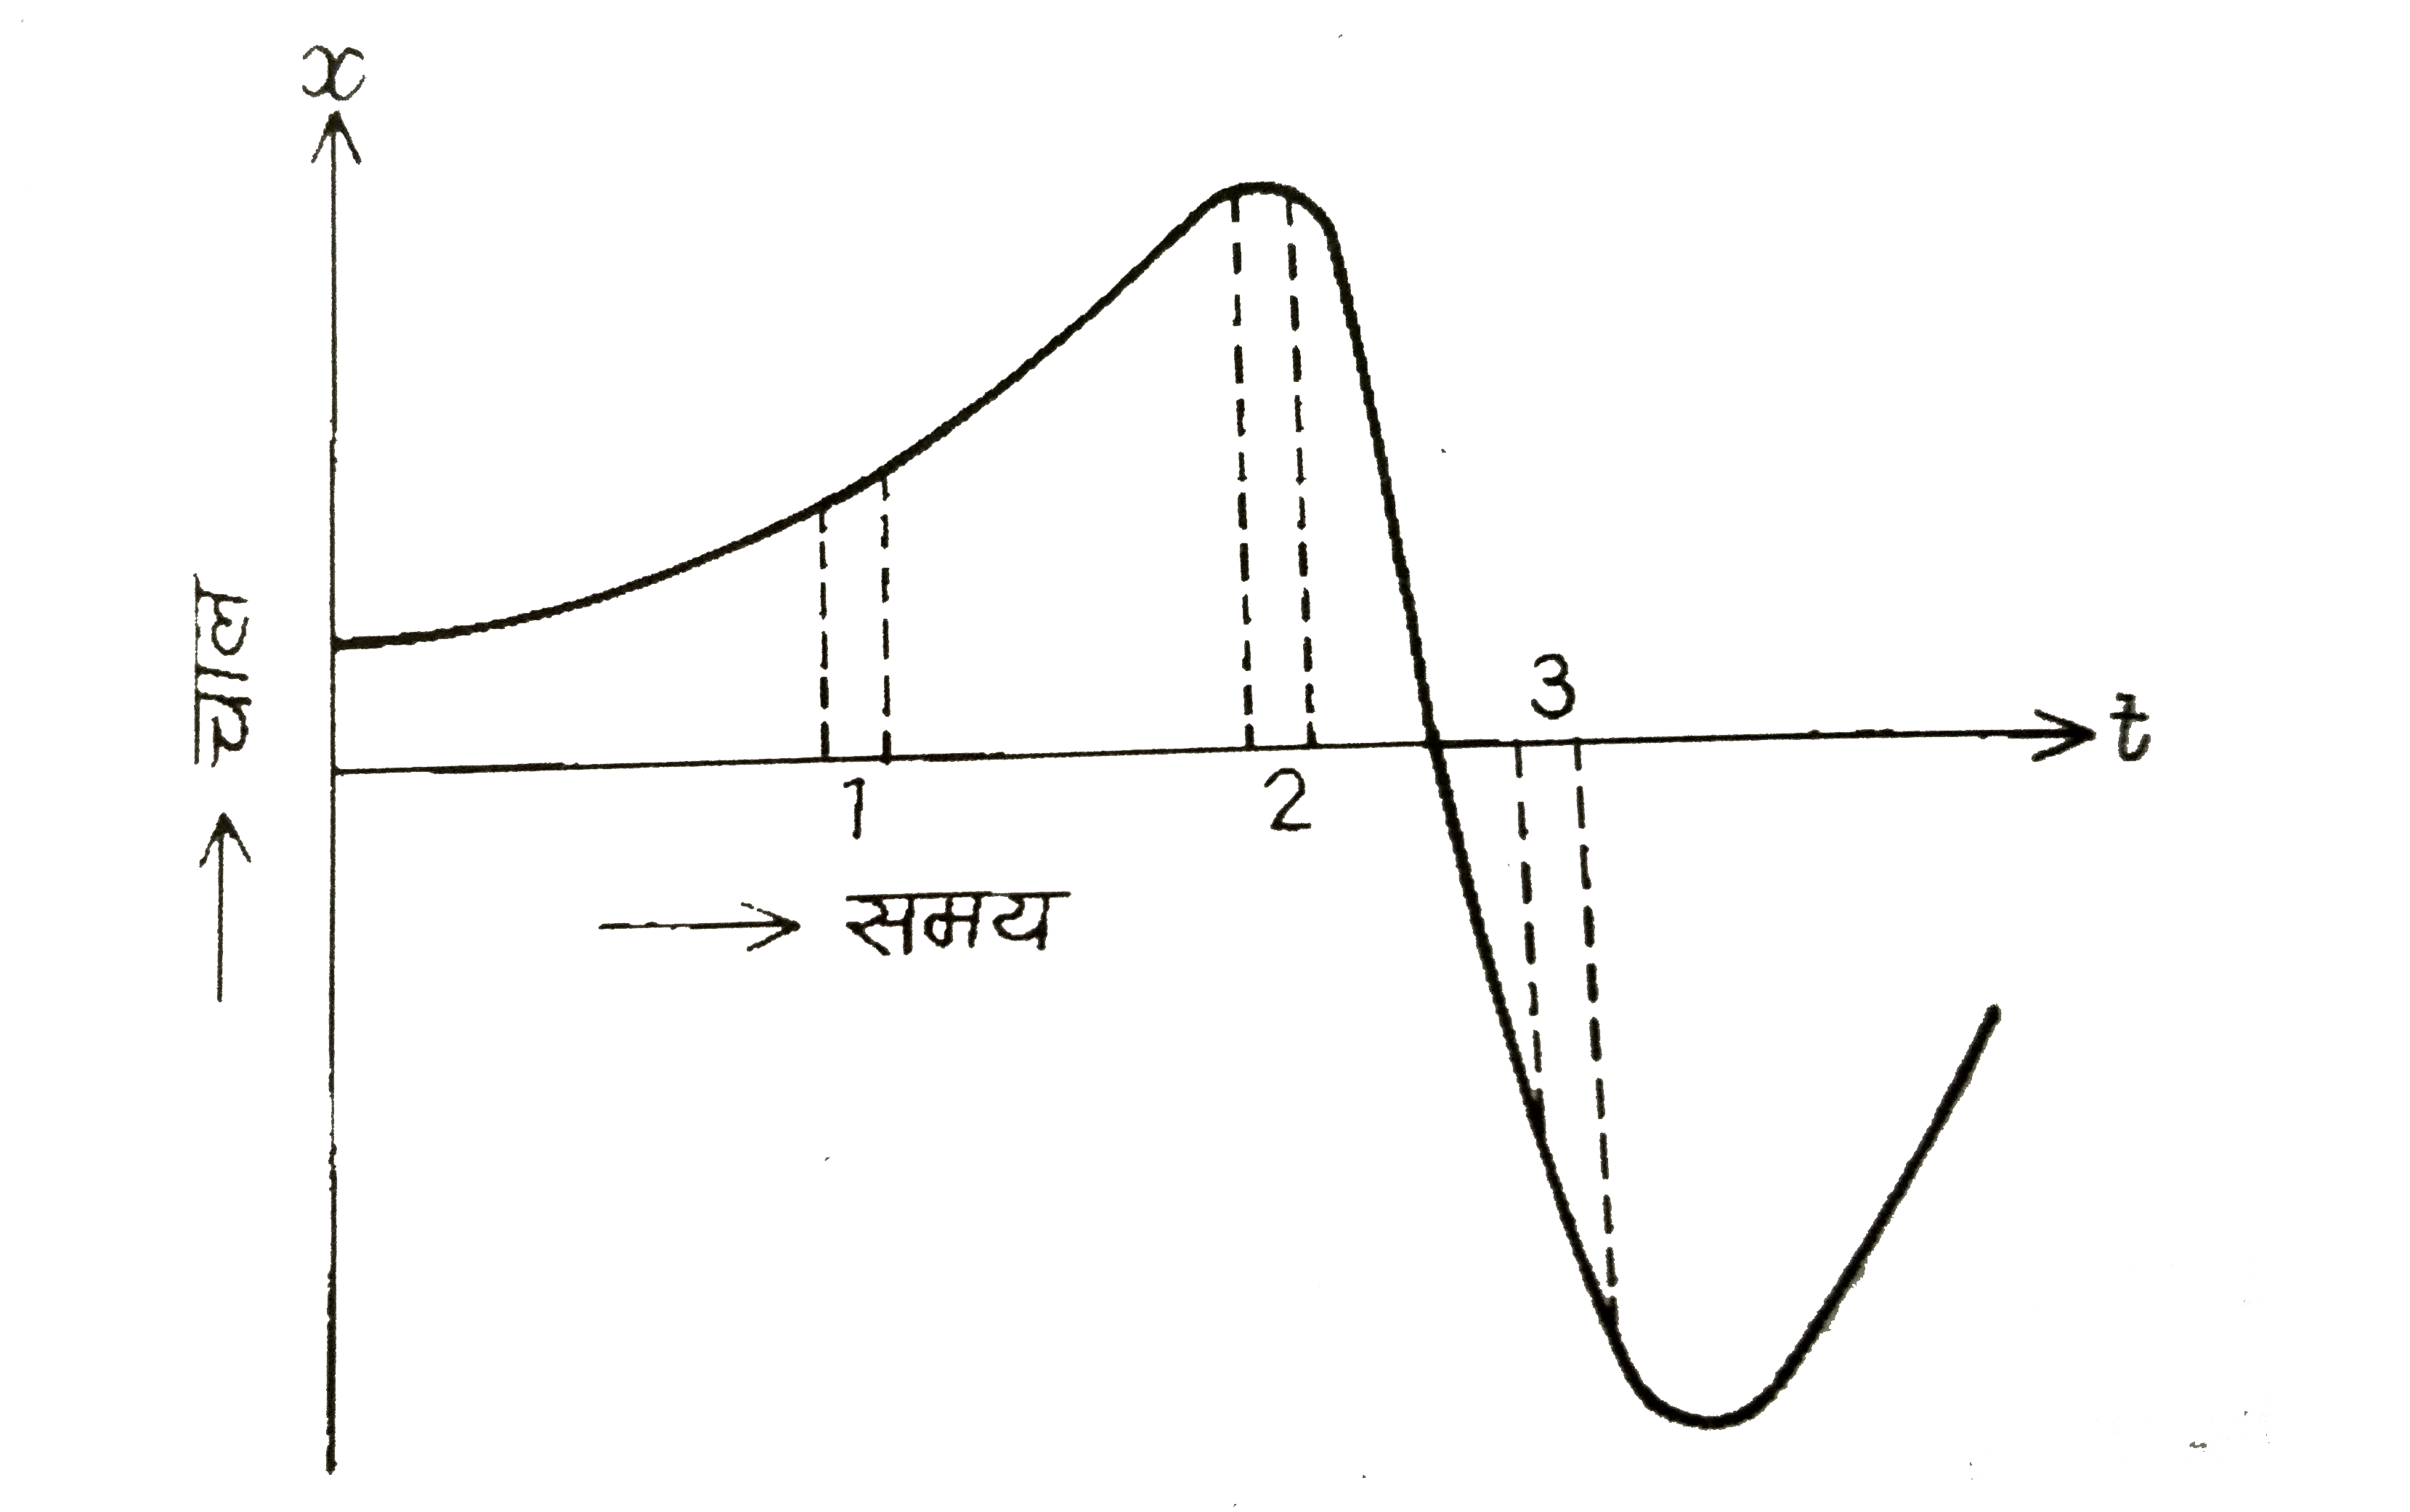 चित्र किसी  का की एकविमीय गति का x-t ग्राफ दर्शाता है । इसमें तीन समान अन्तराल दिखाए गए हैं। किस अन्तराल में औसत चाल अधिकतम हैं और किसमें न्यूनतम हैं? प्रत्येक अन्तराल के लिए औसत वेग का चिन्ह बताइए ।